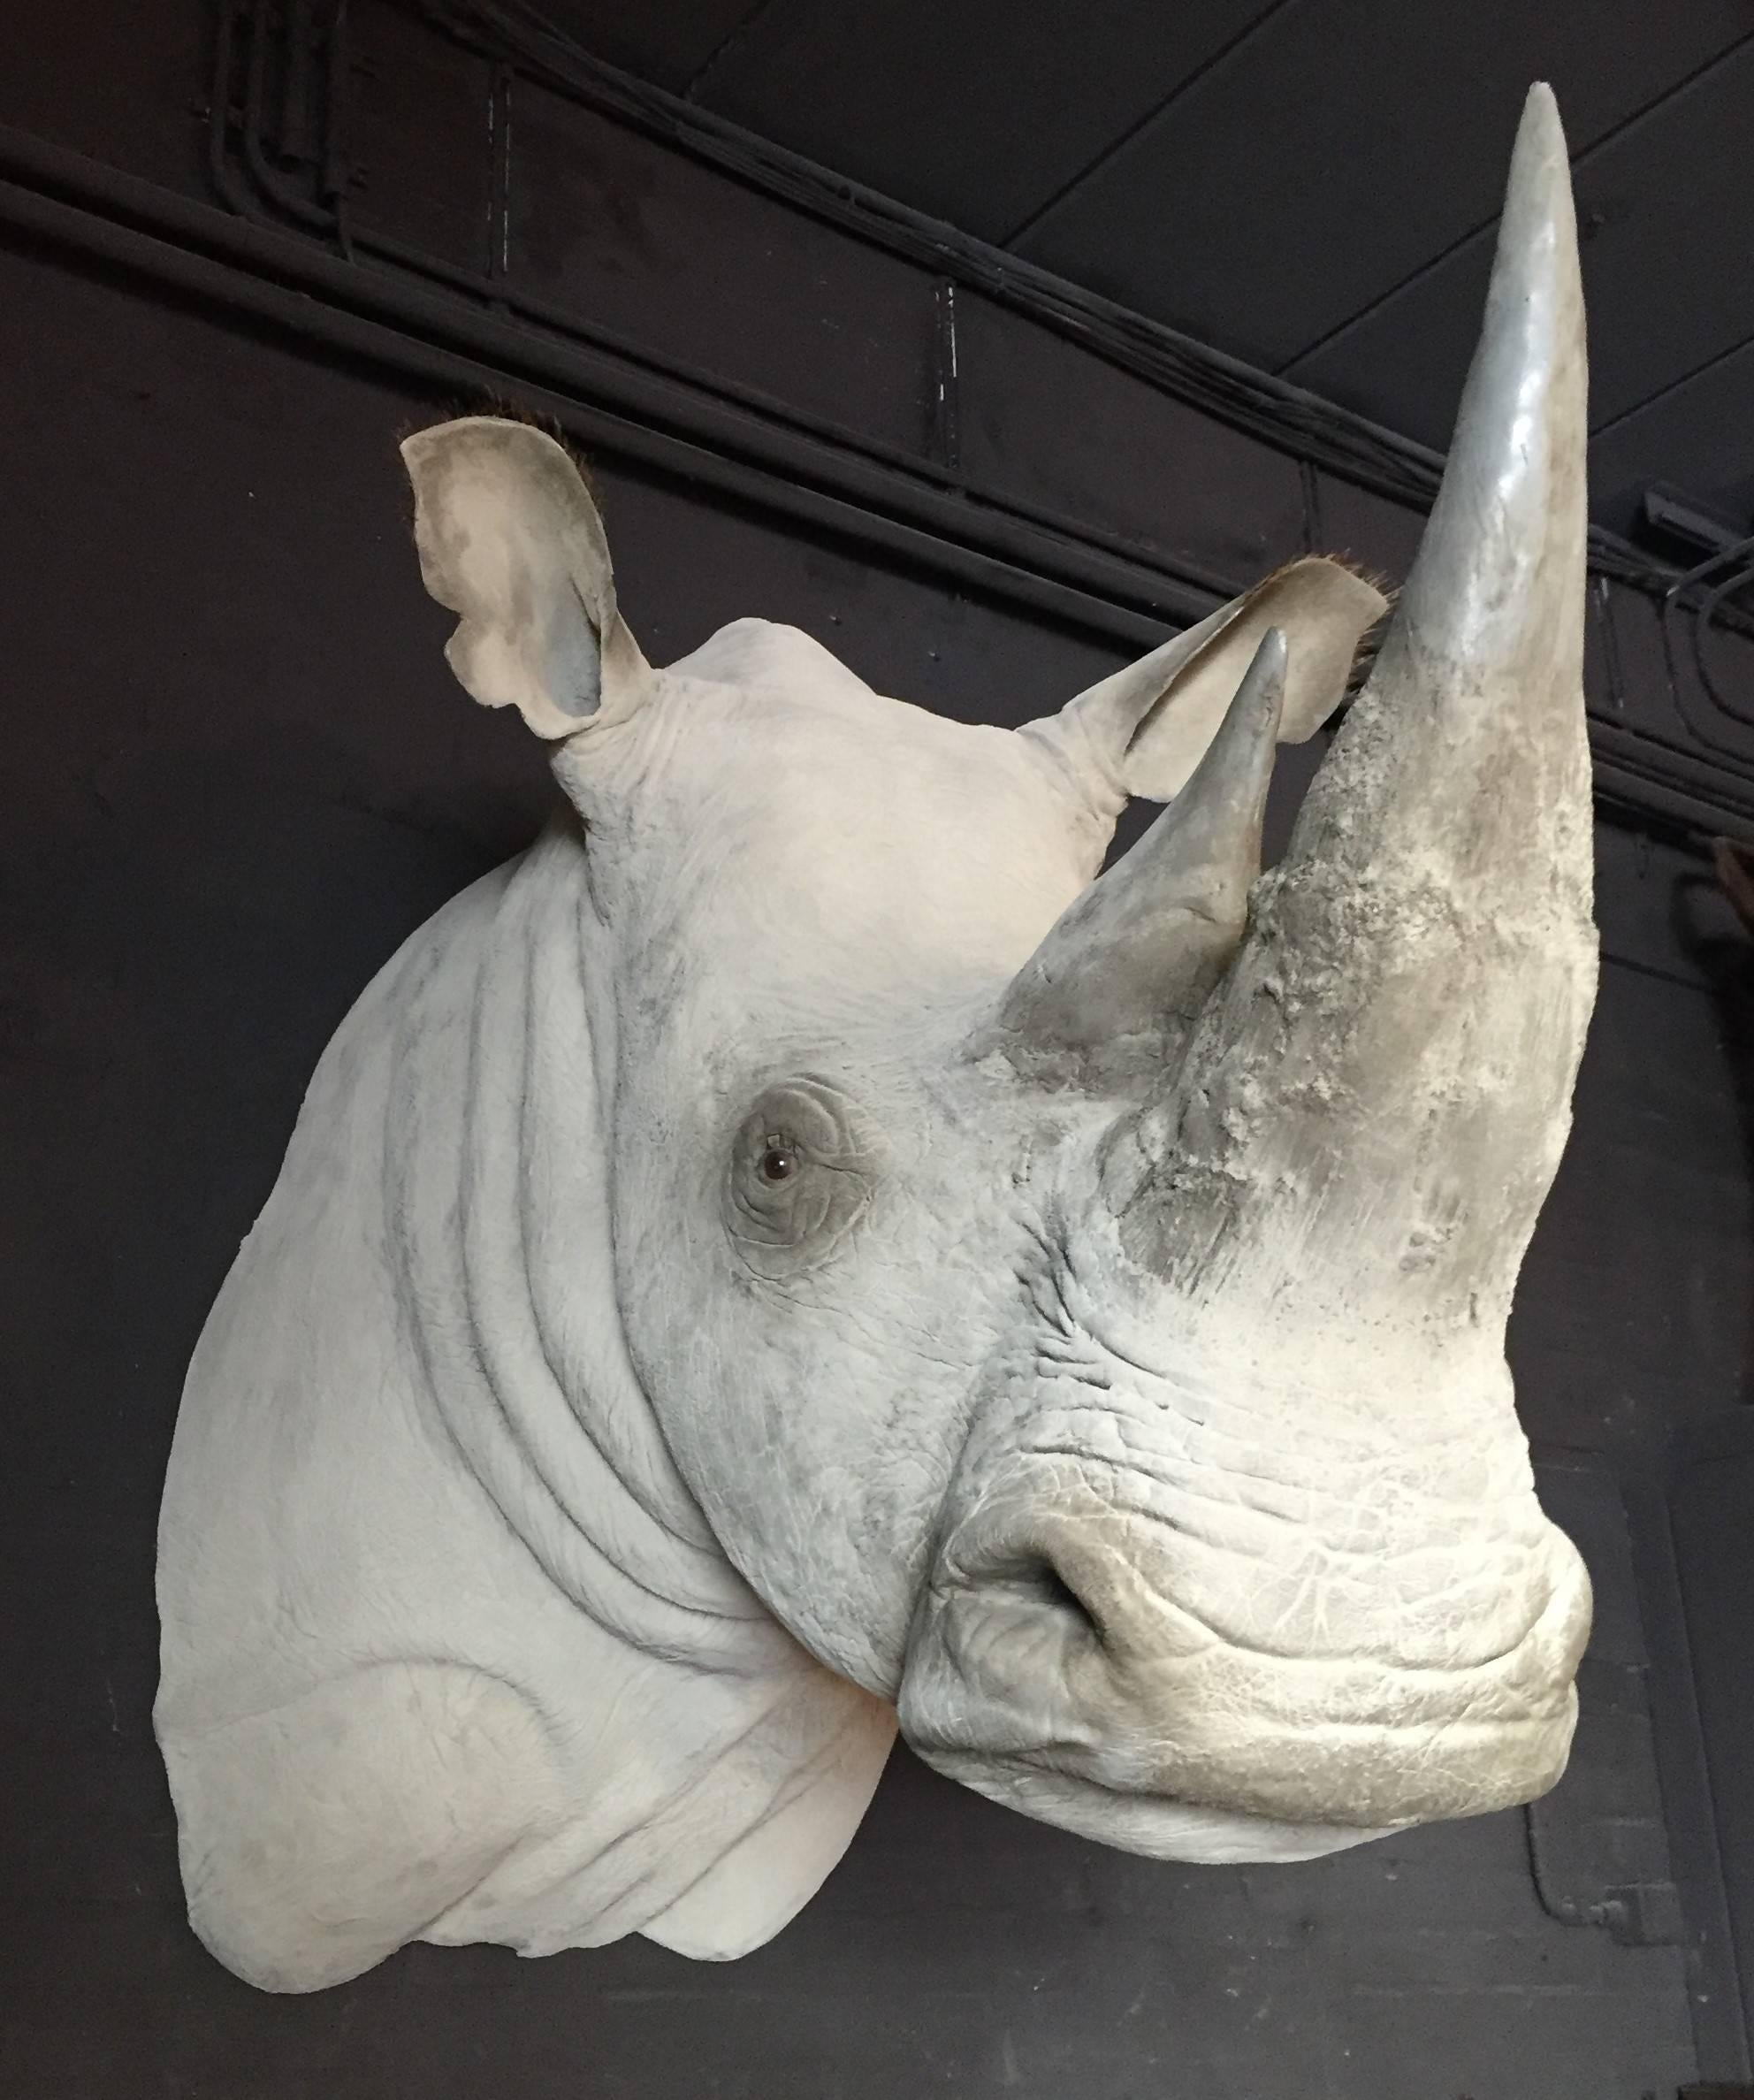 Cette tête de trophée est une copie exacte d'un rhinocéros blanc. Il est réaliste et très détaillé. 
La tête de rhinocéros est un élément puissant de l'intérieur.
 